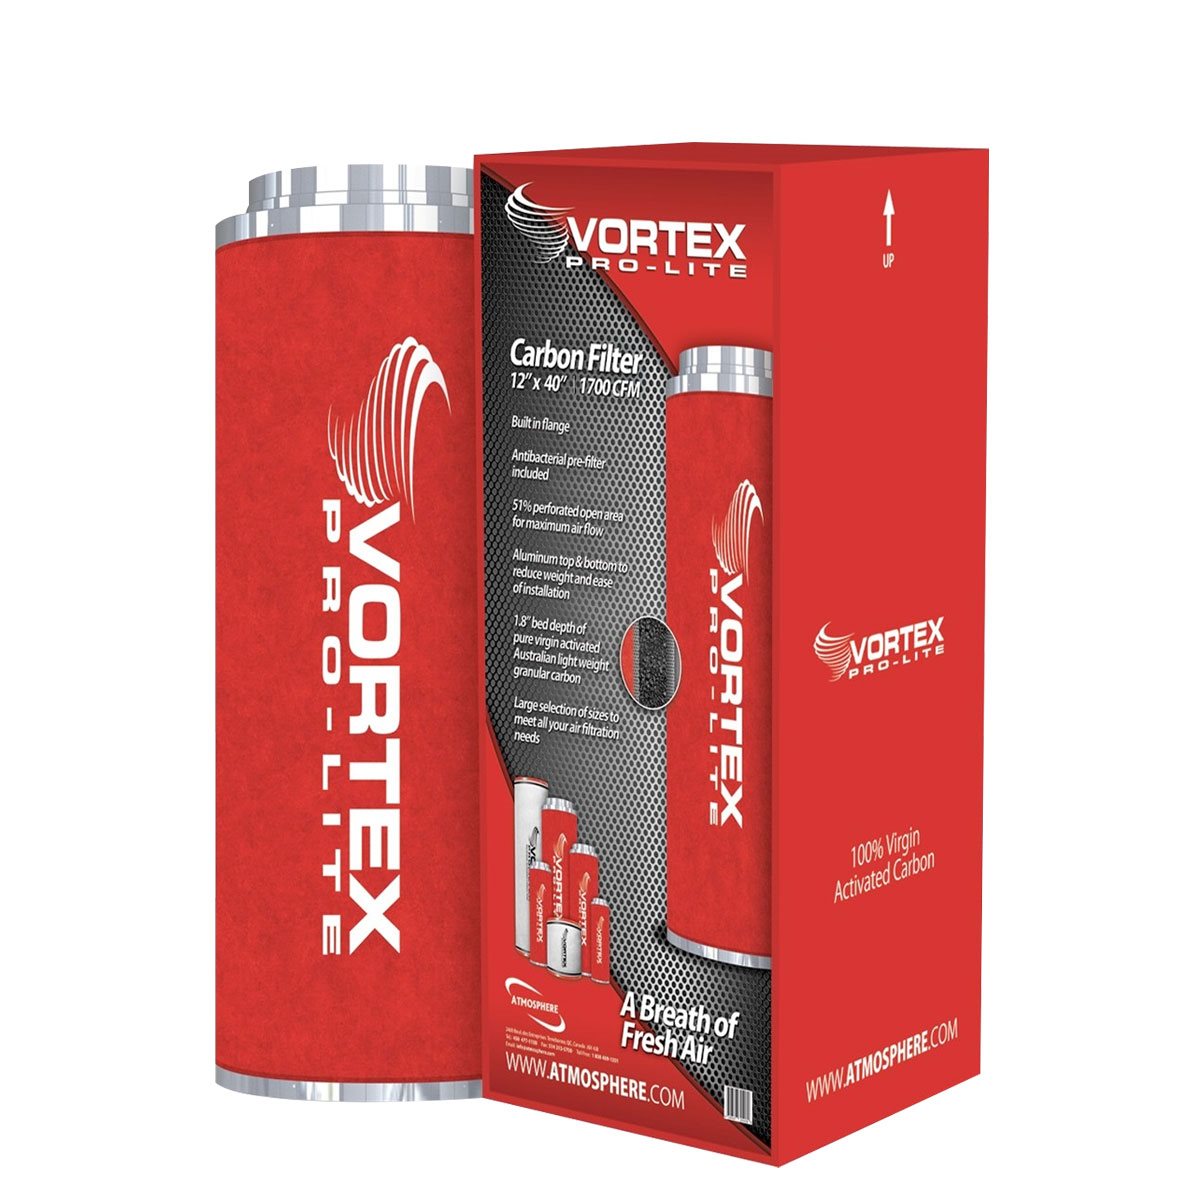 Vortex Pro-Lite Filter 4" x 12" (200 CFM)